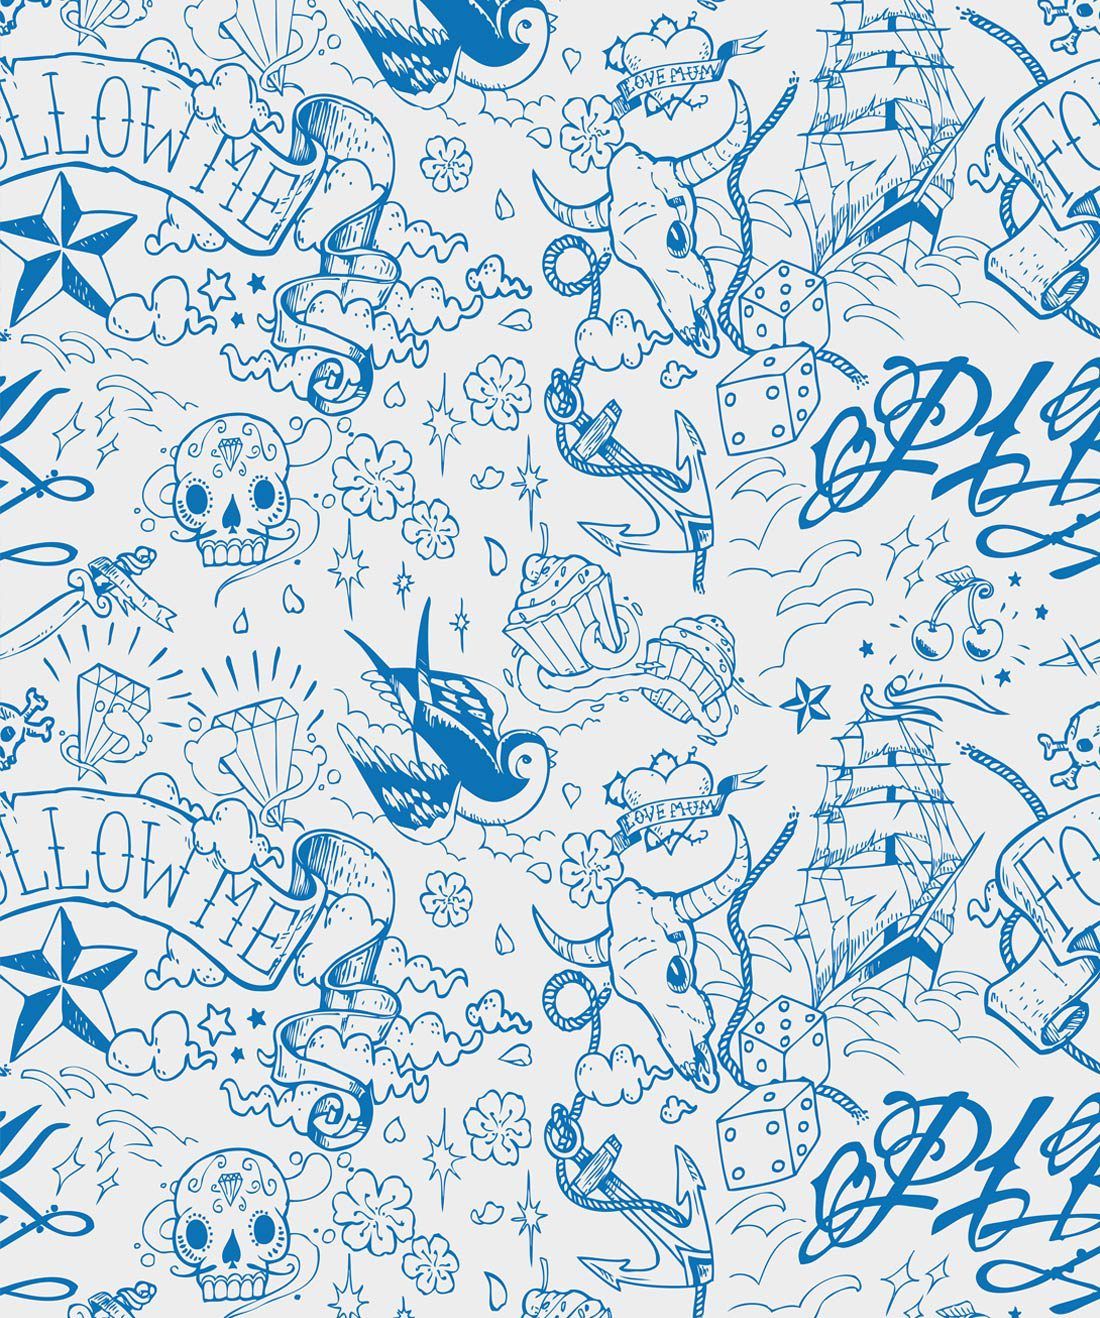 Navy Blue Boy is a sailor tattoo wallpaper